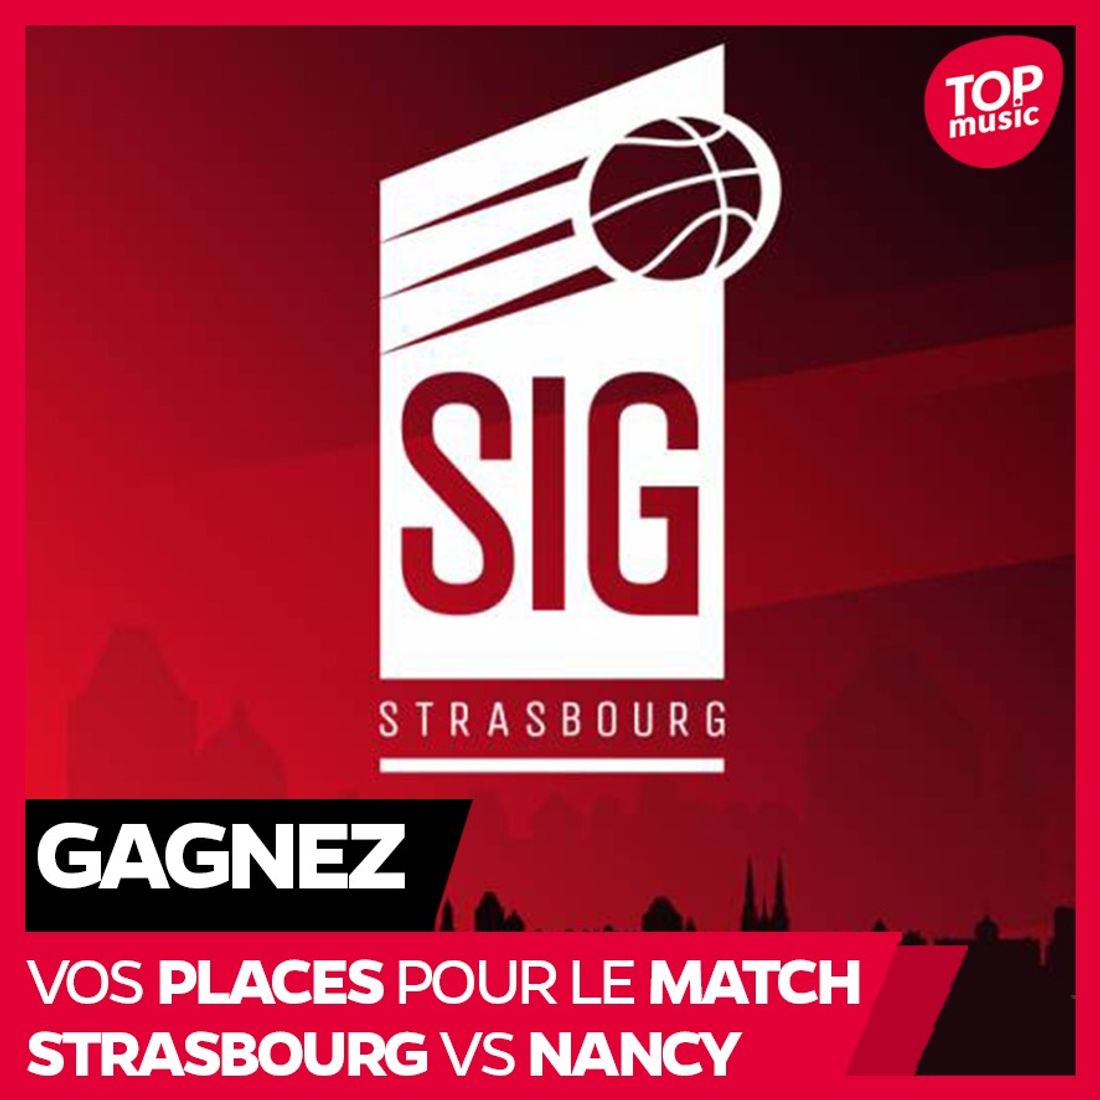 Gagnez vos places pour le match Strasbourg vs Nancy 